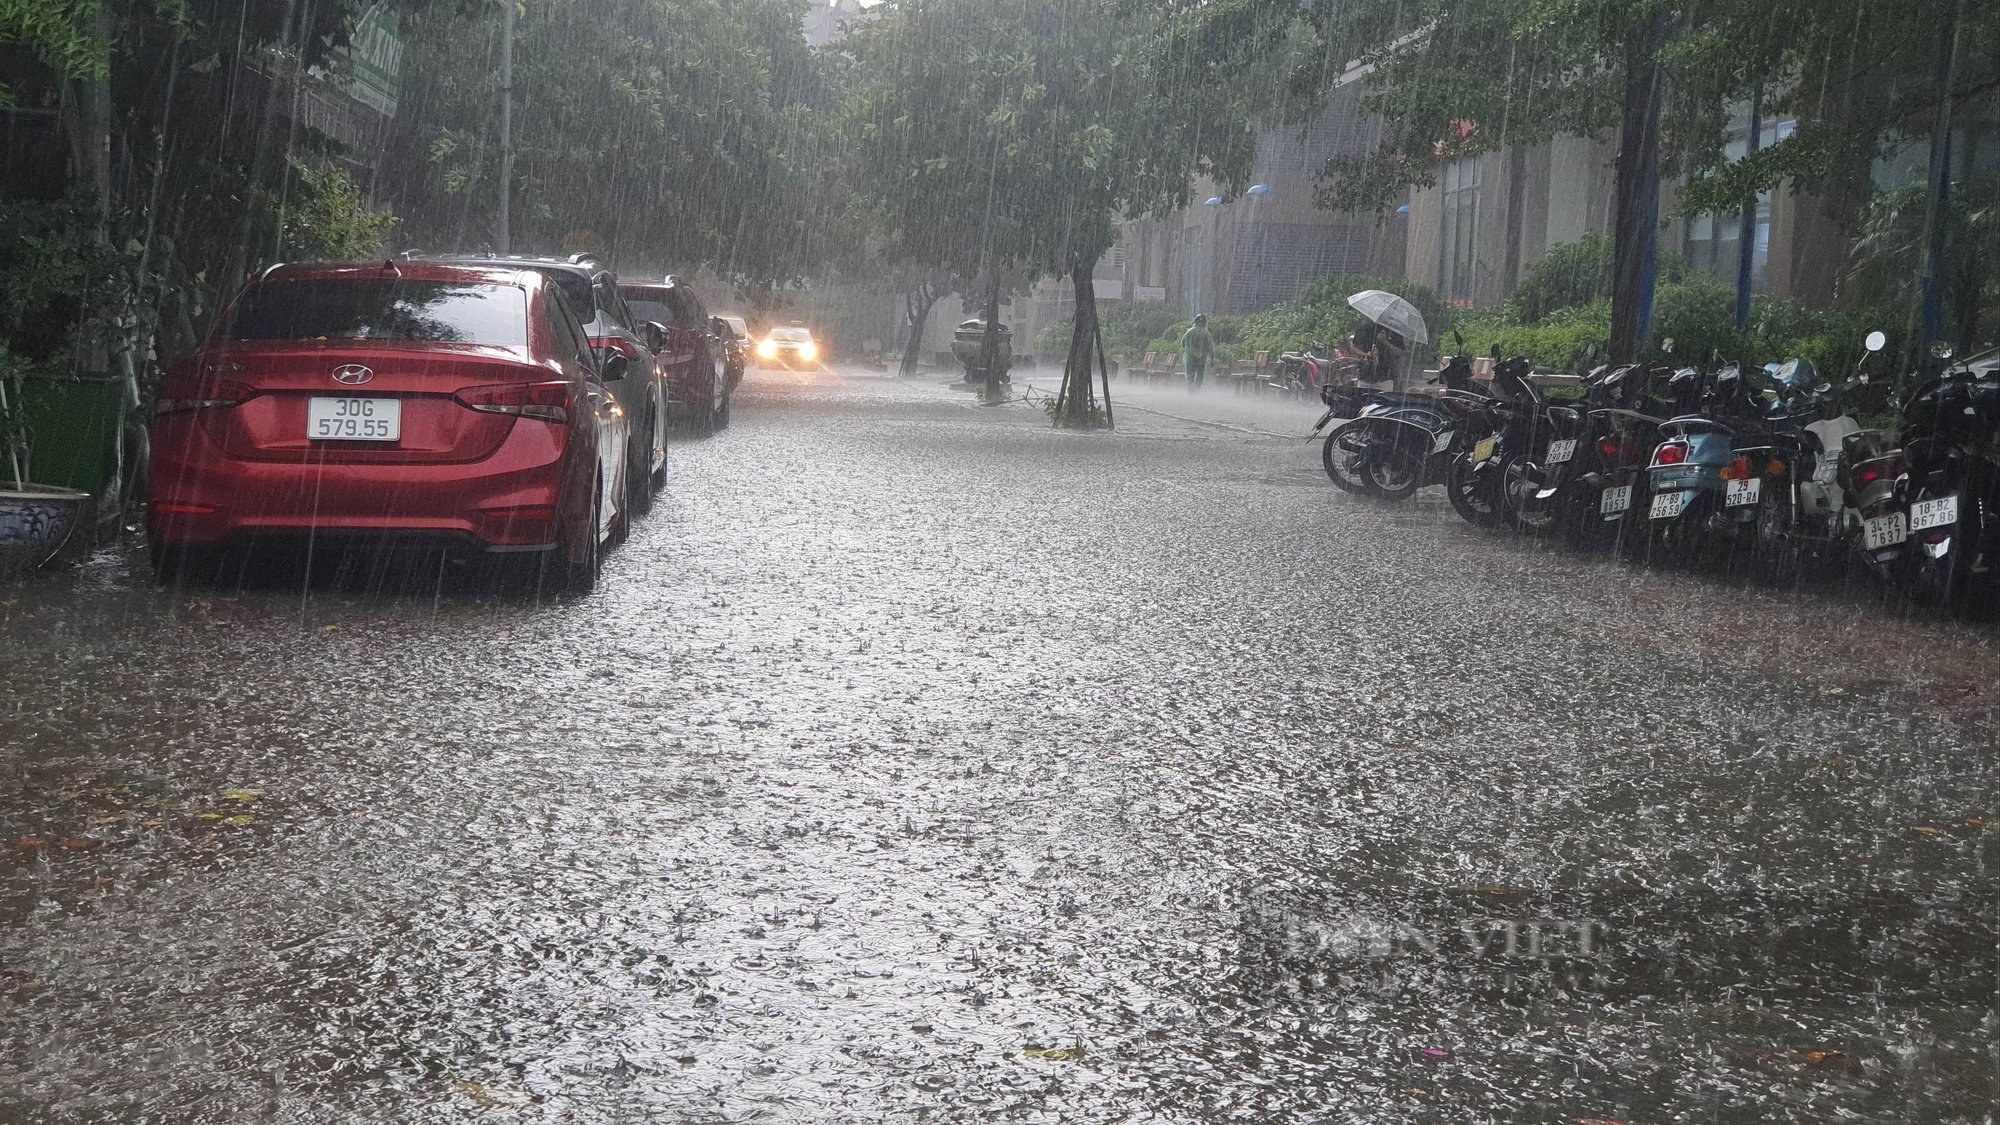 Hà Nội mưa kéo dài chưa đầy 30 phút, cây đã đổ đè ô tô và ngập đường - Ảnh 1.